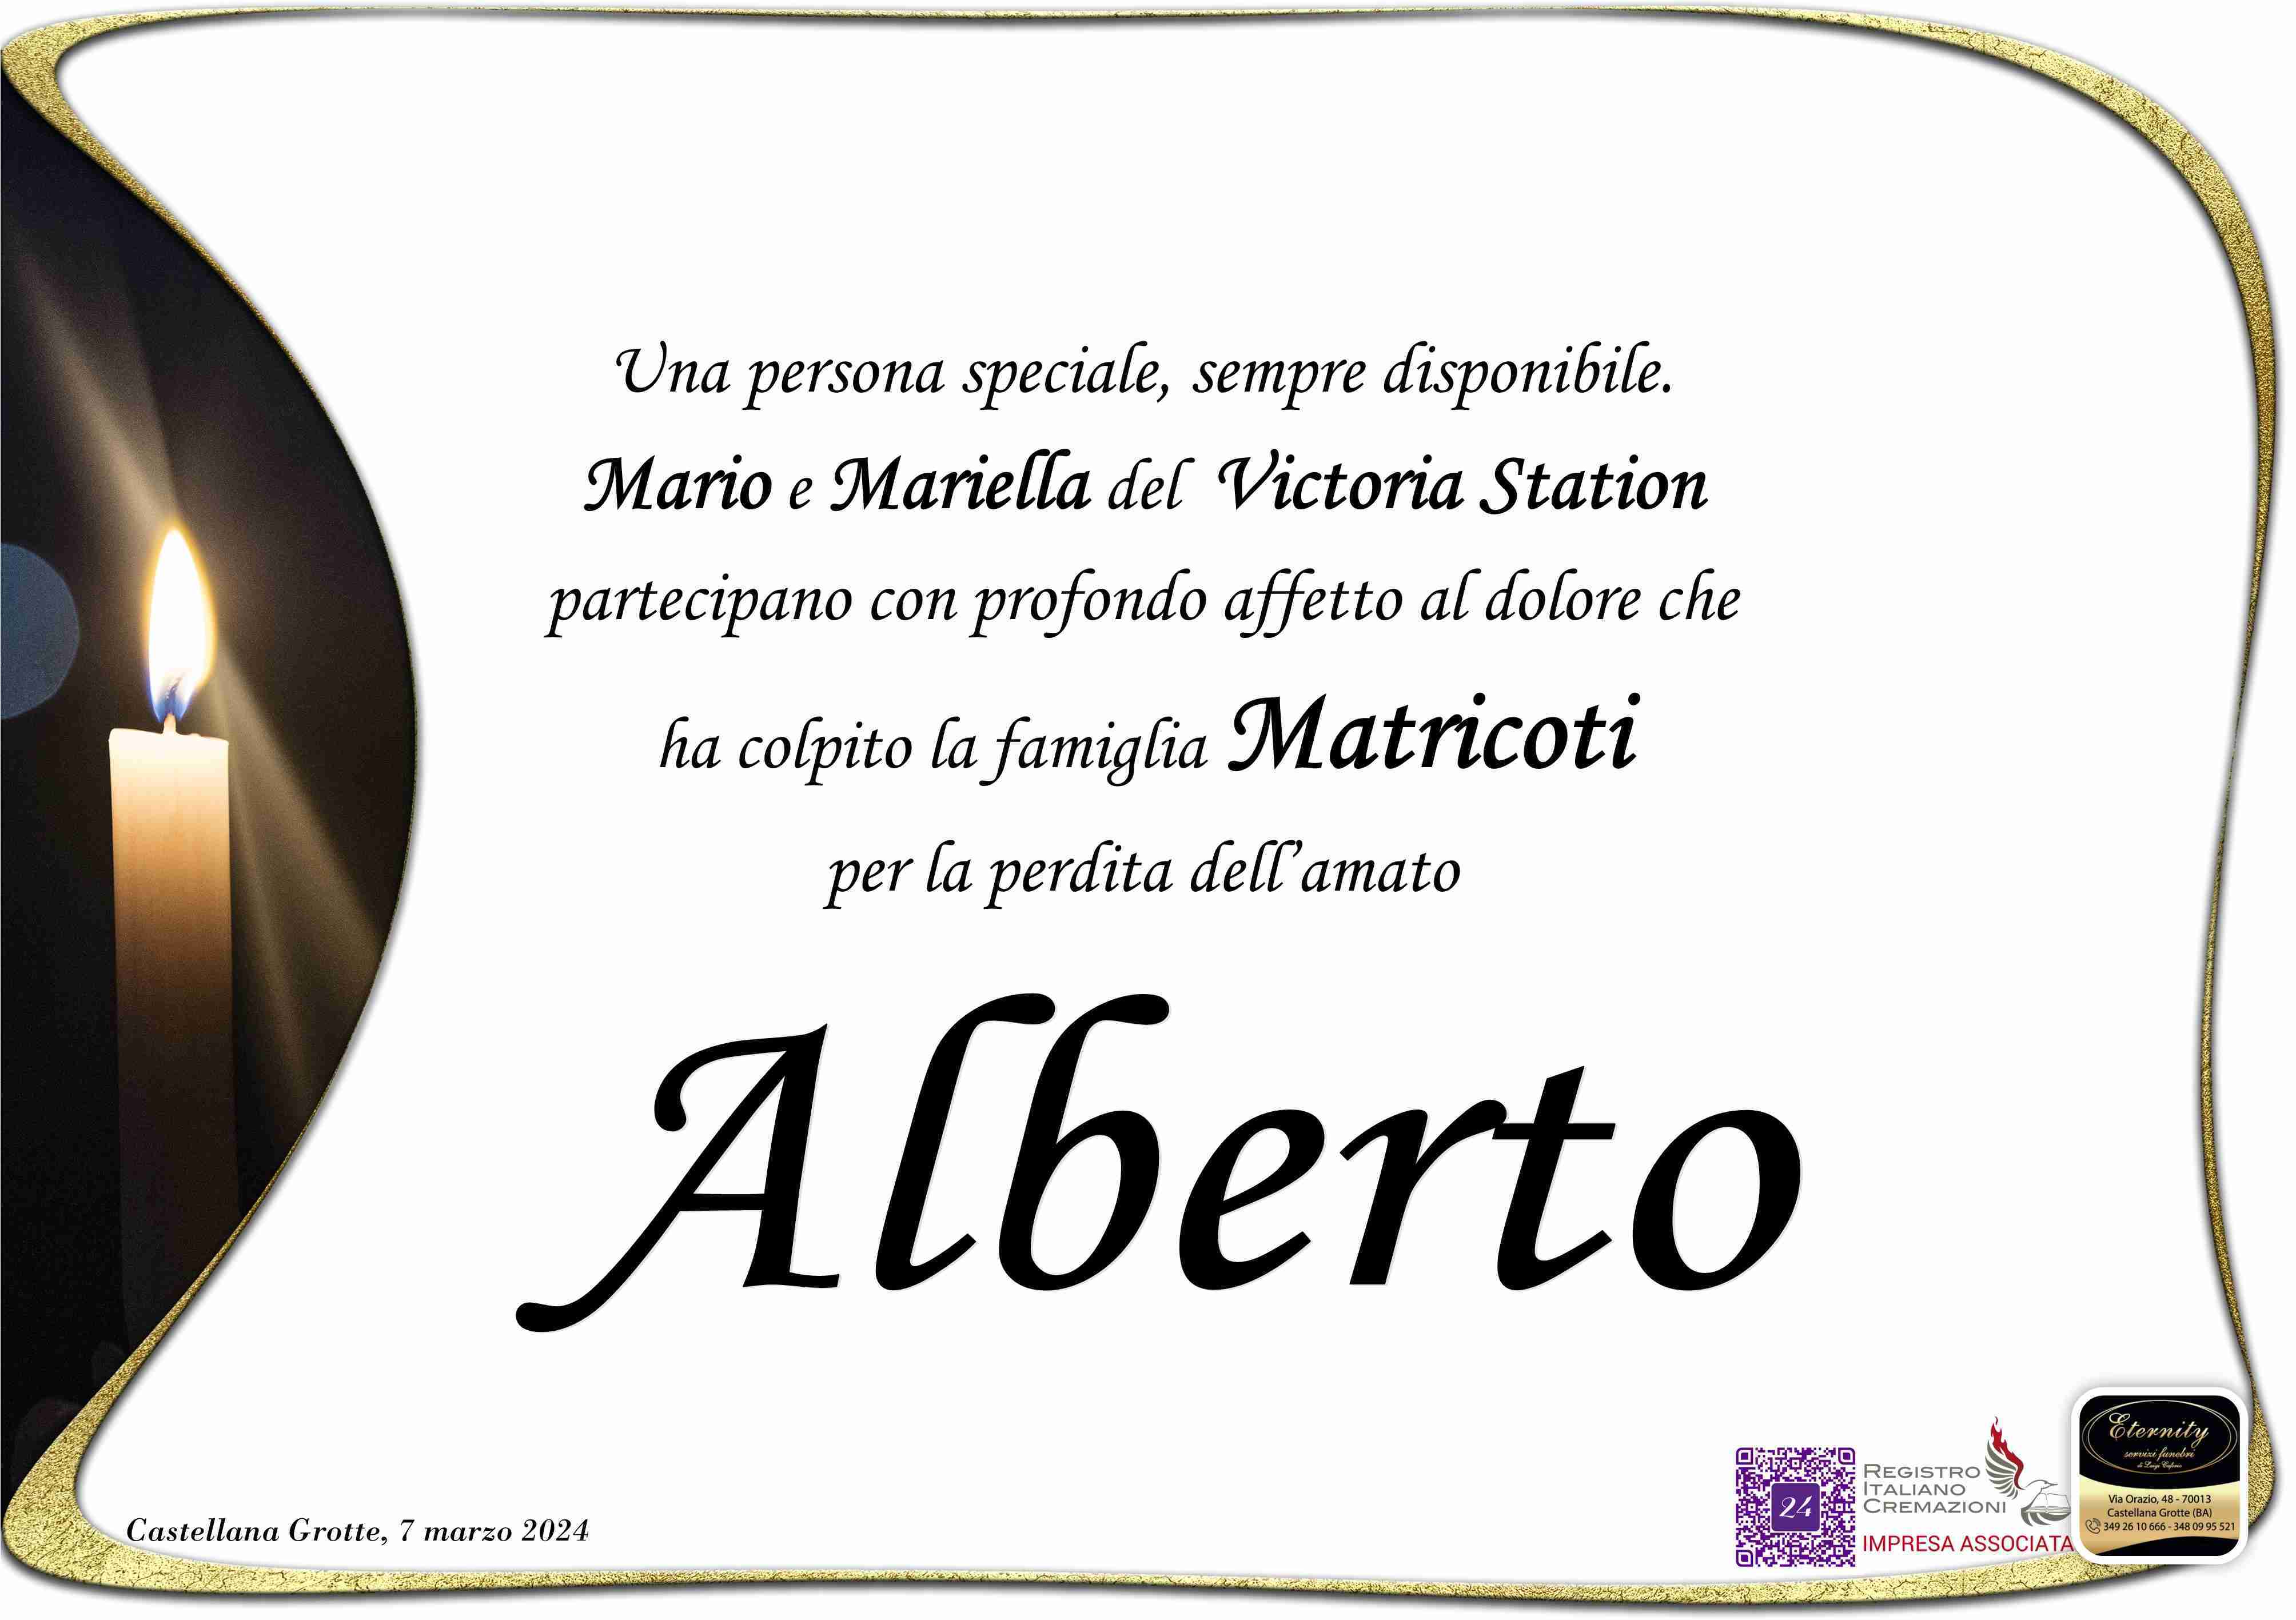 Alberto Vito Michele Matricoti